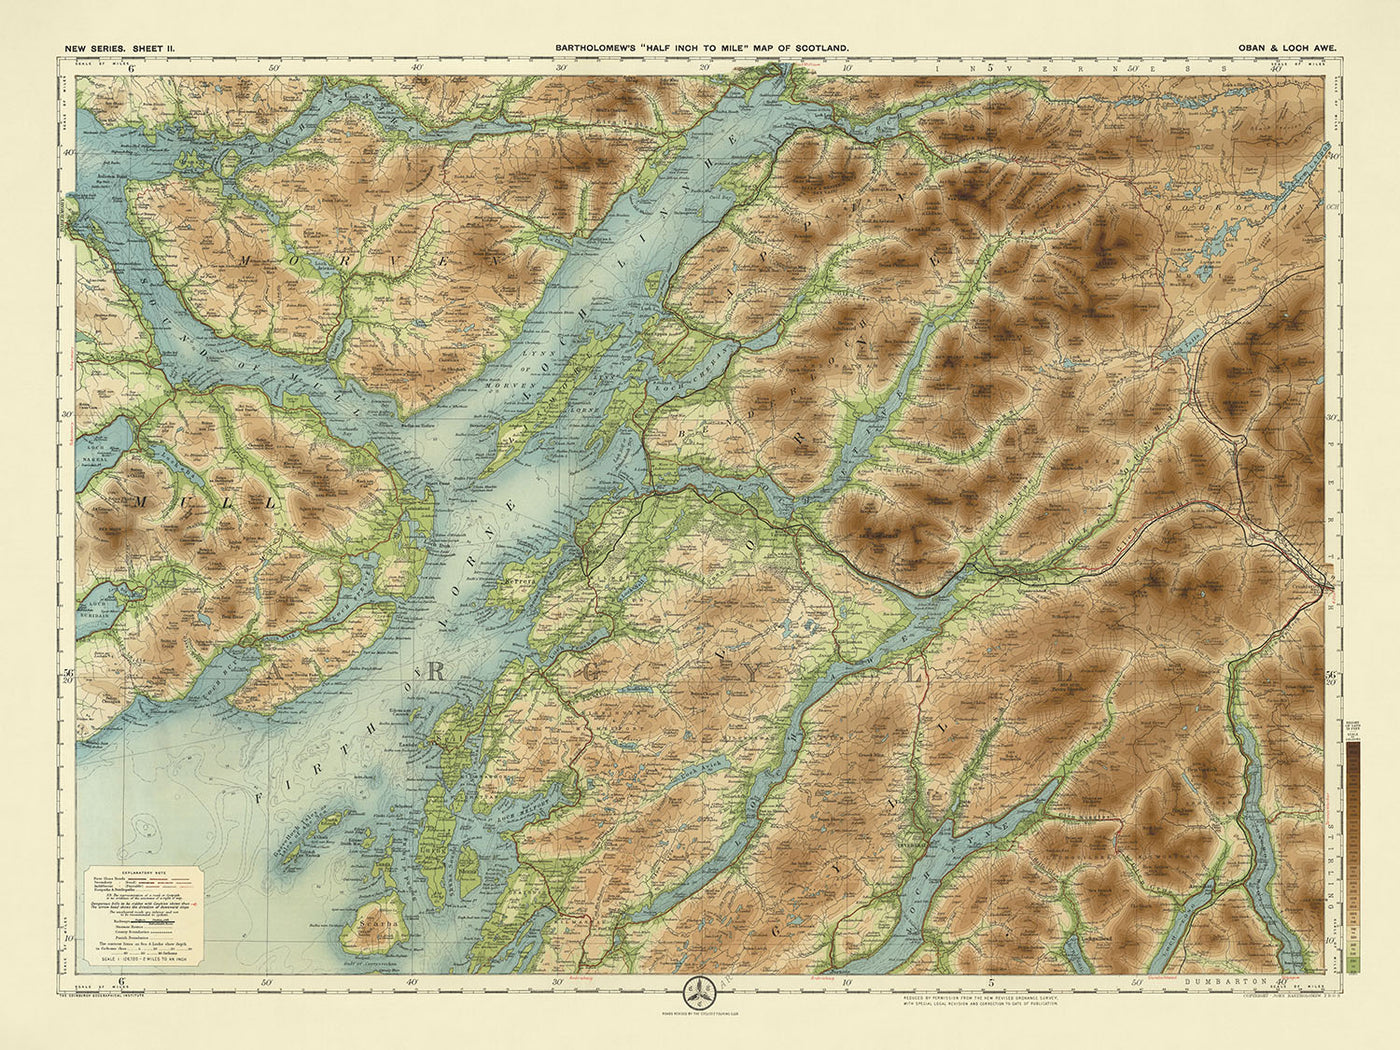 Alte OS-Karte von Oban & Loch Awe, Argyllshire von Bartholomew, 1901: Oban, Loch Awe, Ben Cruachan, Glen Coe, Isle of Mull, Loch Lomond